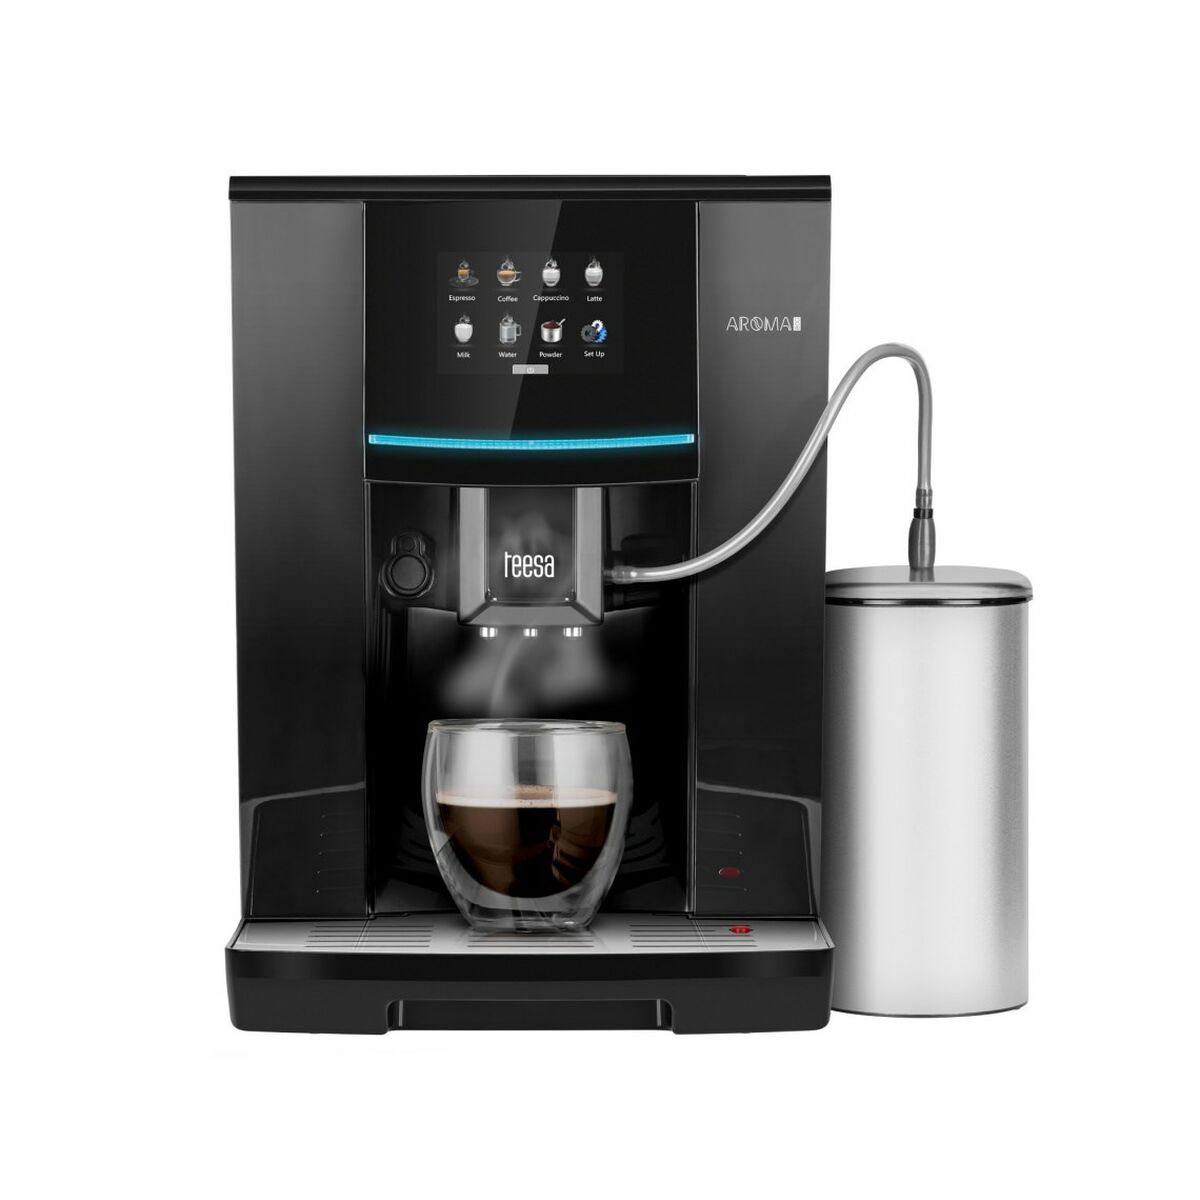 Superautomatische Kaffeemaschine TEESA Aroma 800 Schwarz 1500 W 19 bar 2 L 250 g - CA International 